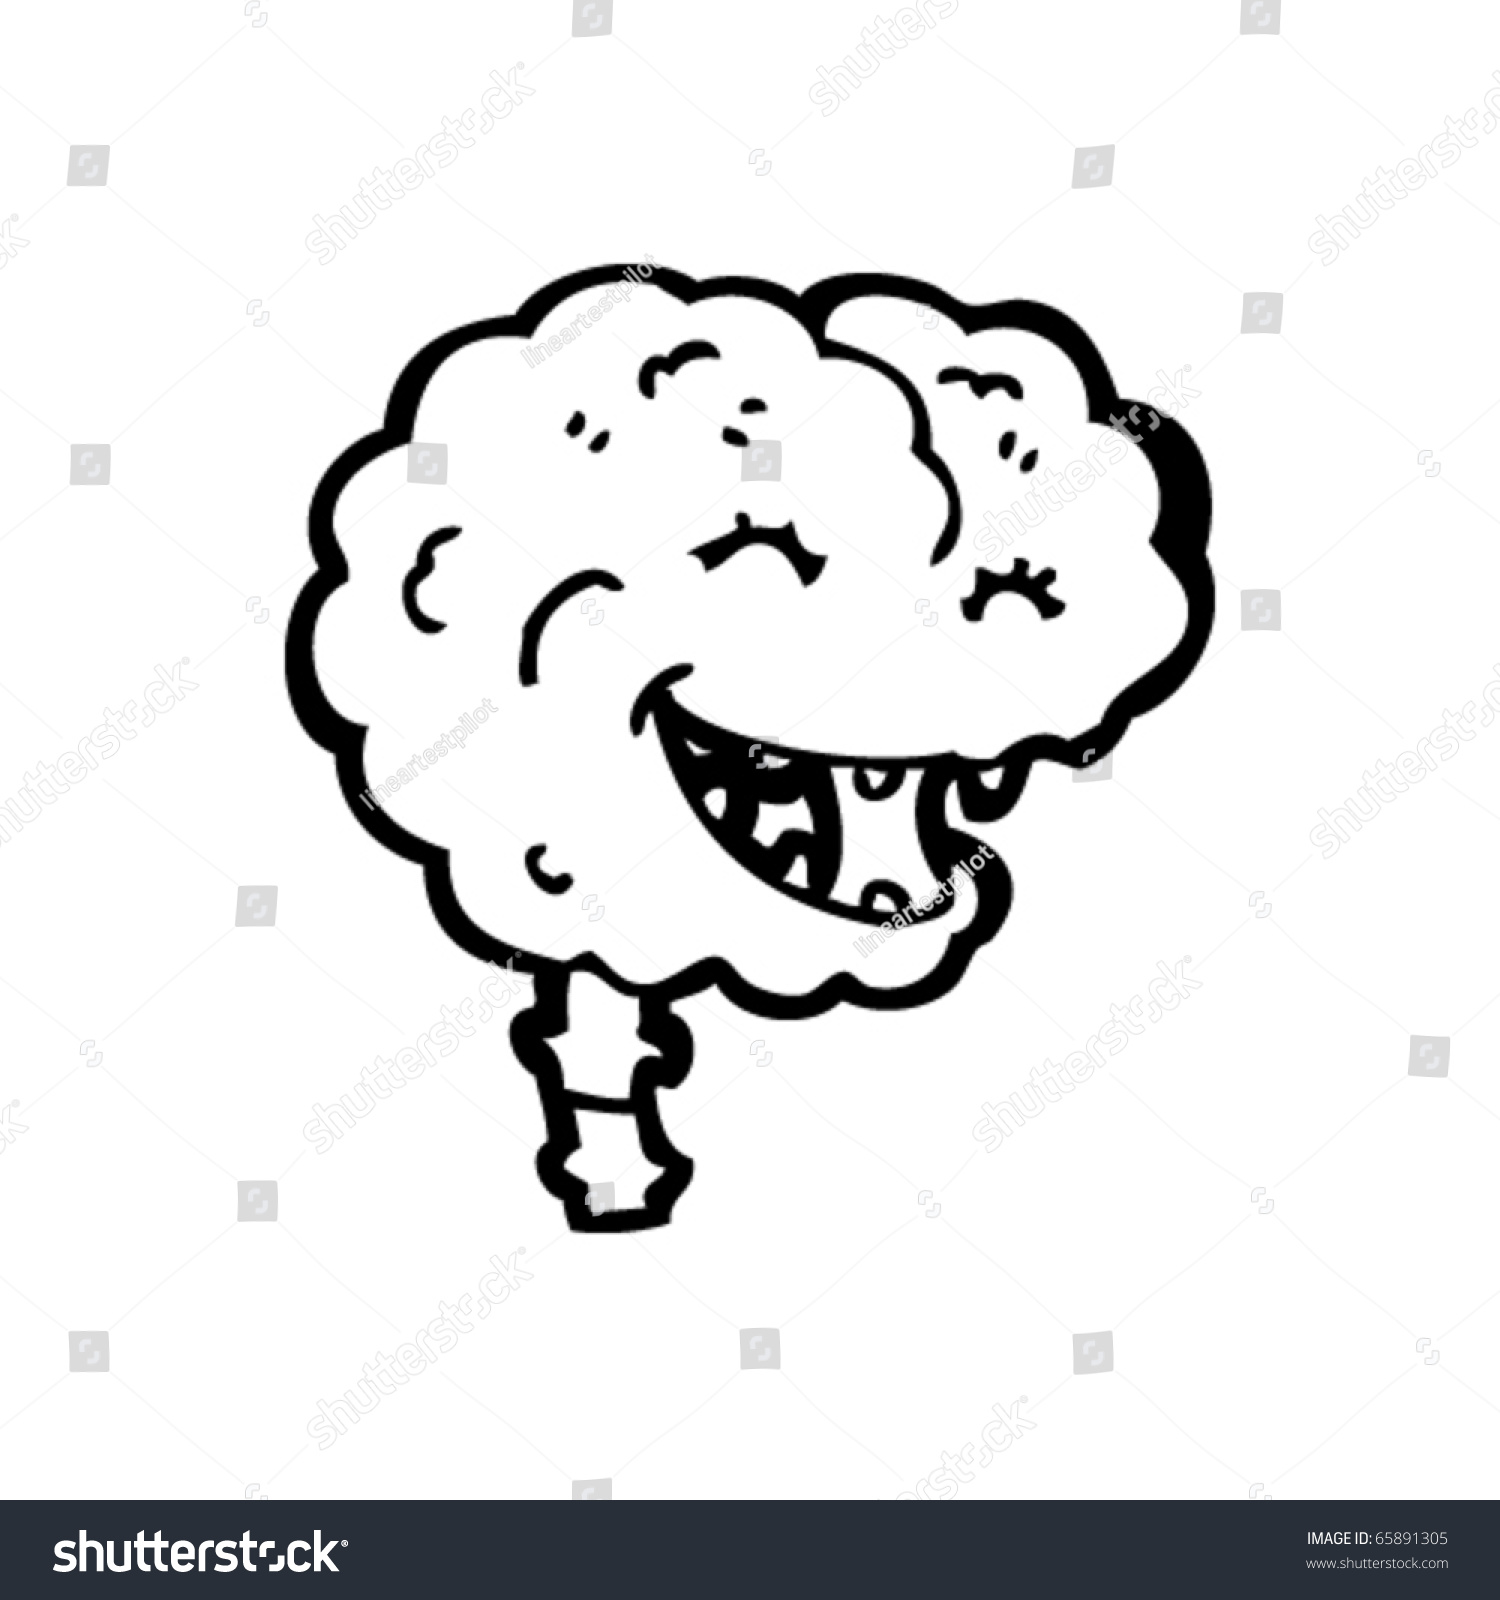 Gross Brain Cartoon Stock Vector 65891305 - Shutterstock